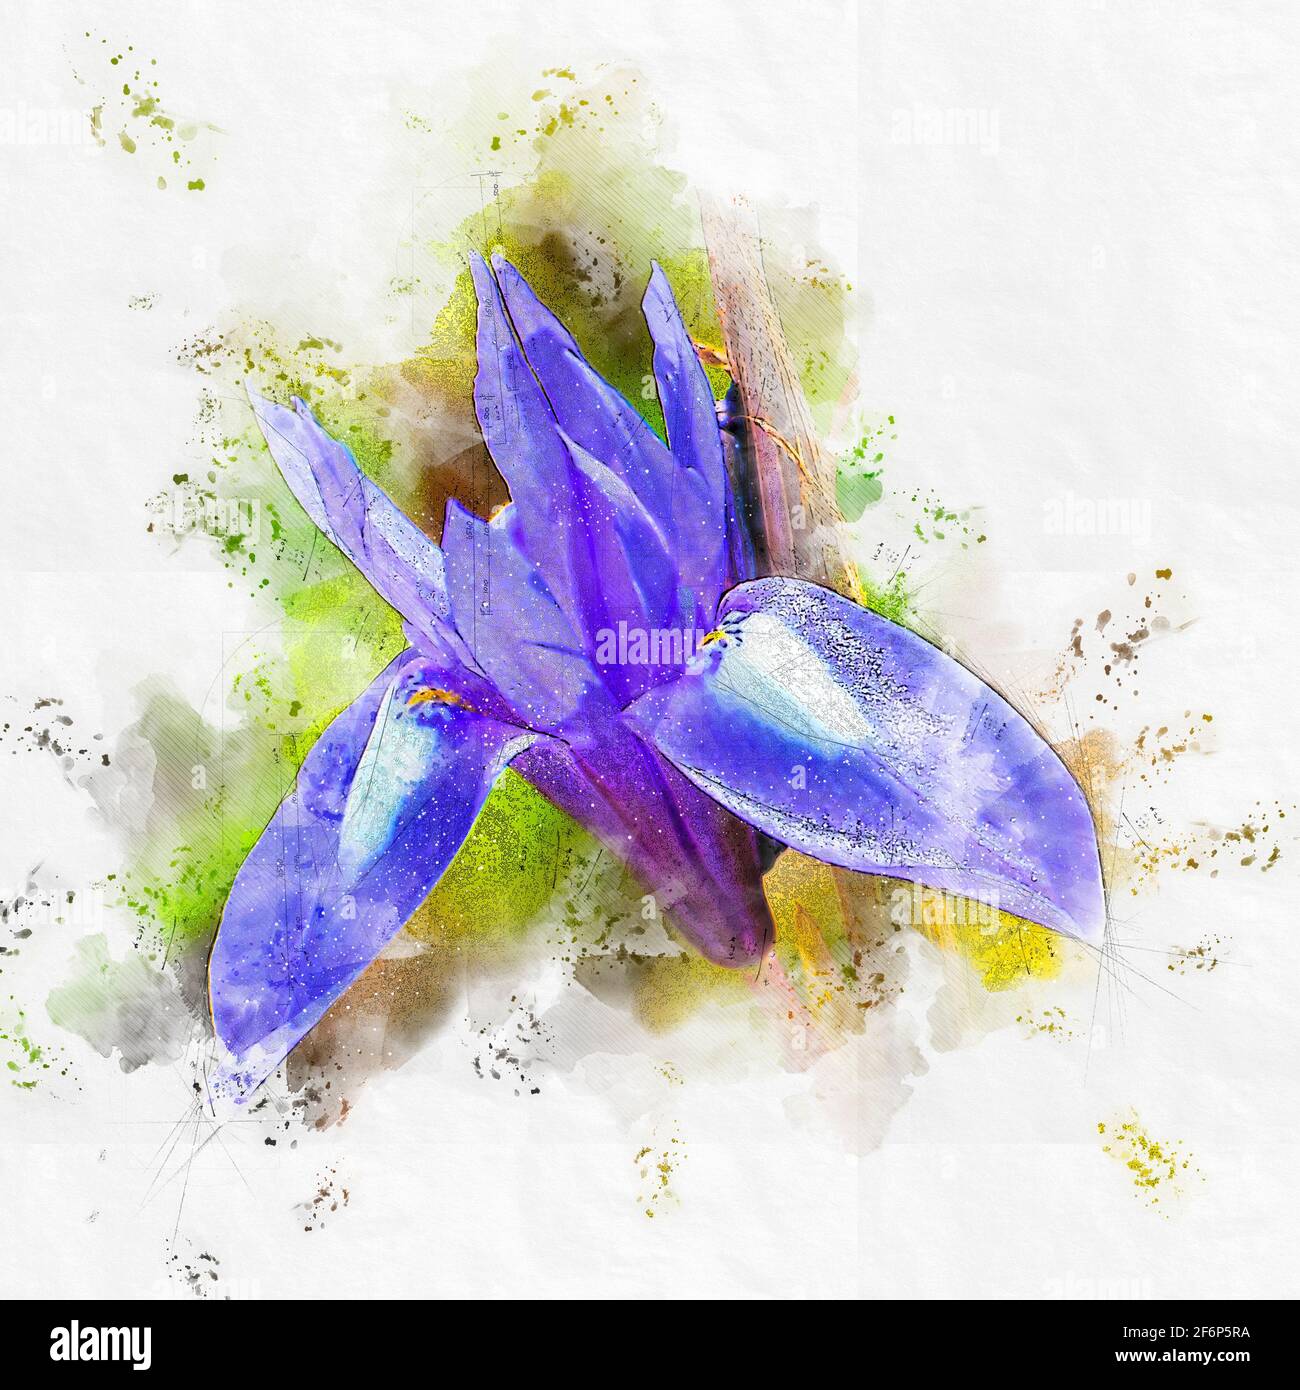 Digitally enhanced image of a Blue Iris or Barbary Nut, (Moraea sisyrinchium syn. Gynandriris sisyrinchium) Photographed in Israel in March a dwarf ir Stock Photo